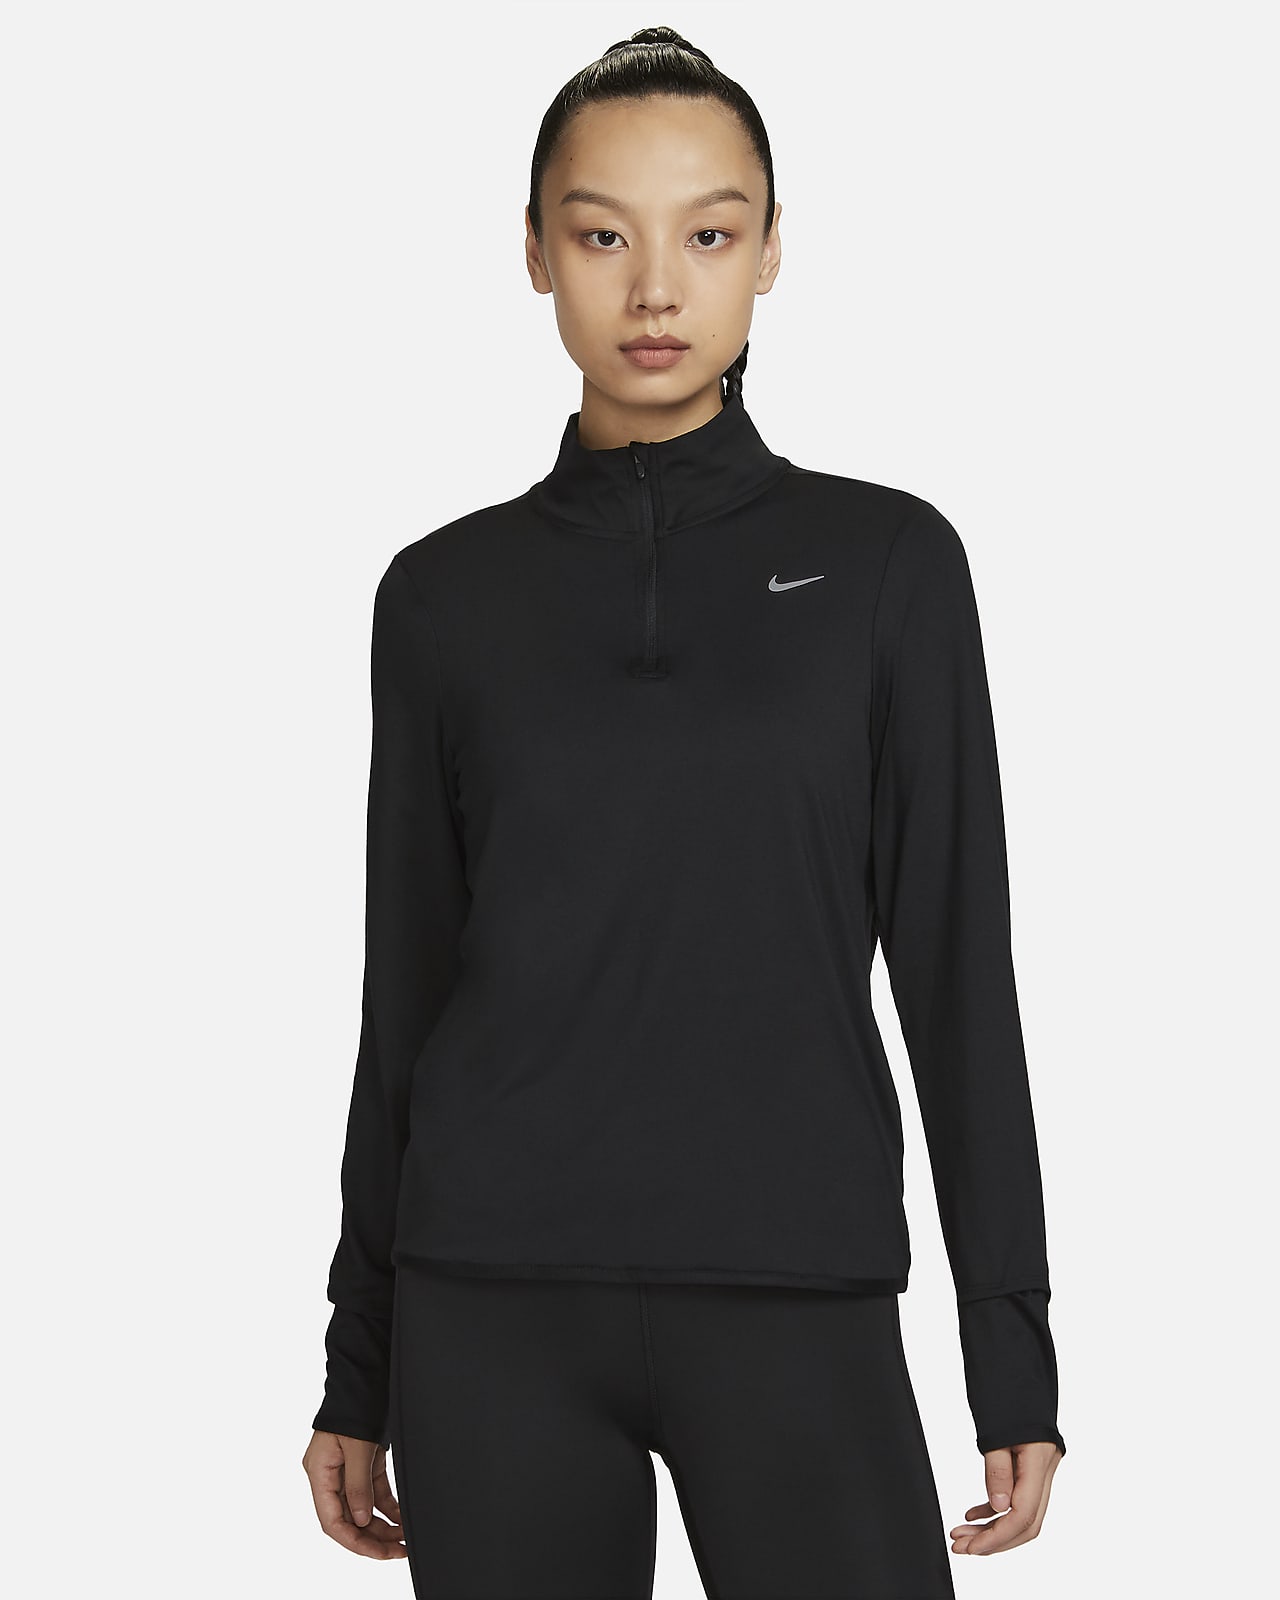 Nike Dri-FIT Swift Element UV 女款 1/4 拉鍊跑步上衣